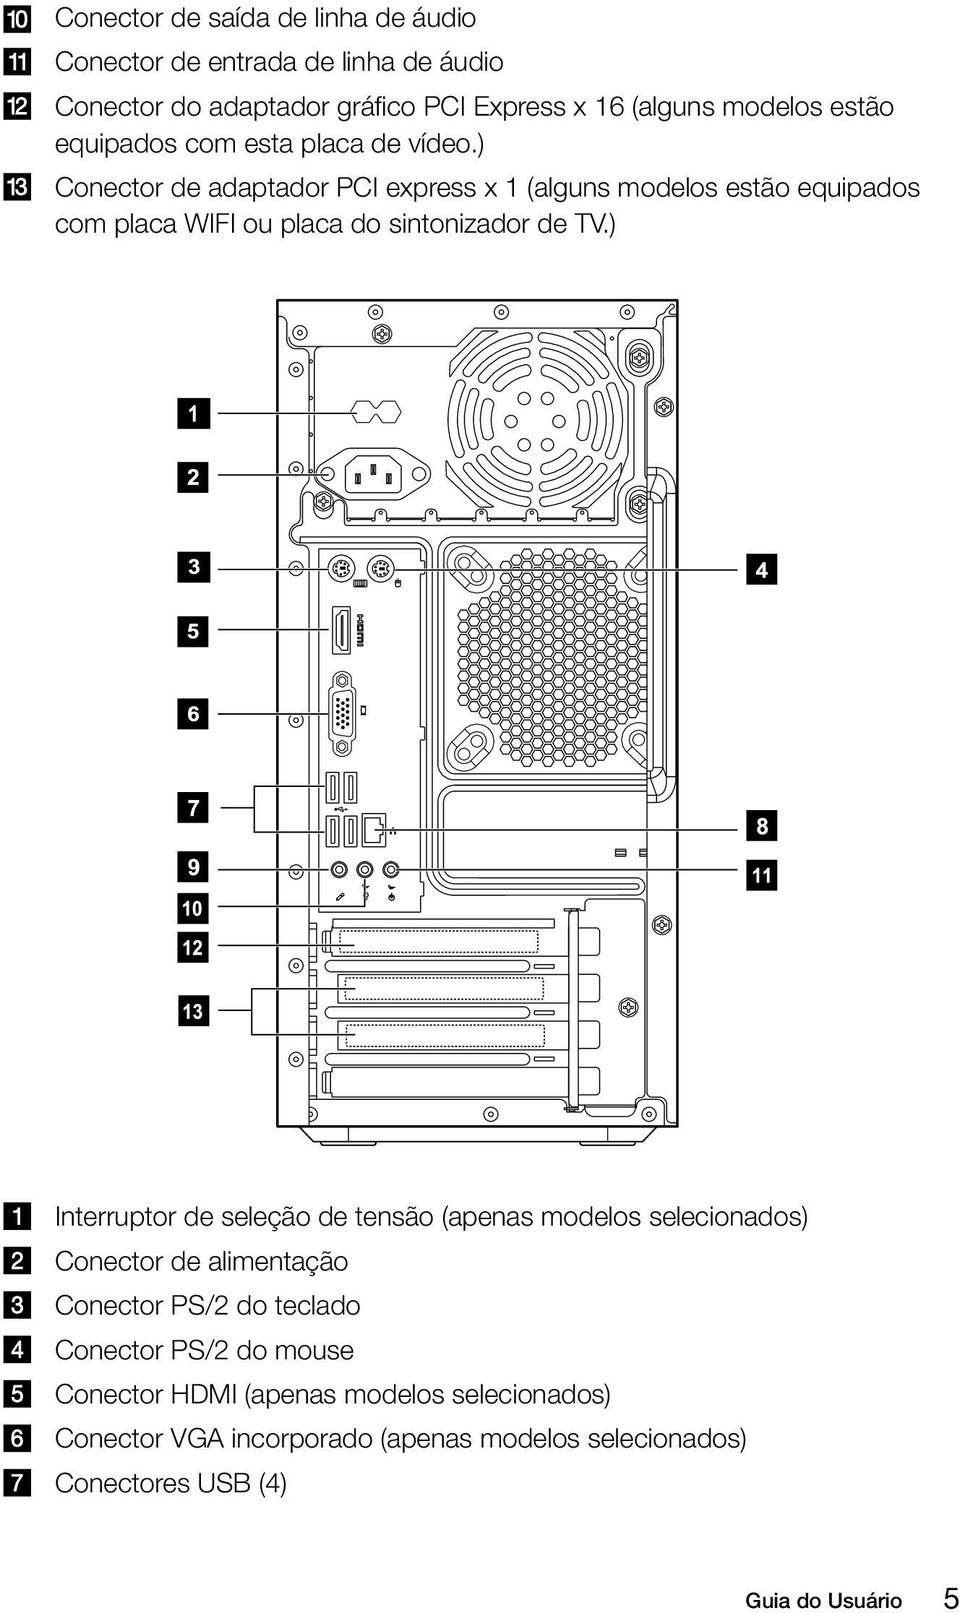 ) Conector de adaptador PCI express x 1 (alguns modelos estão equipados com placa WIFI ou placa do sintonizador de TV.